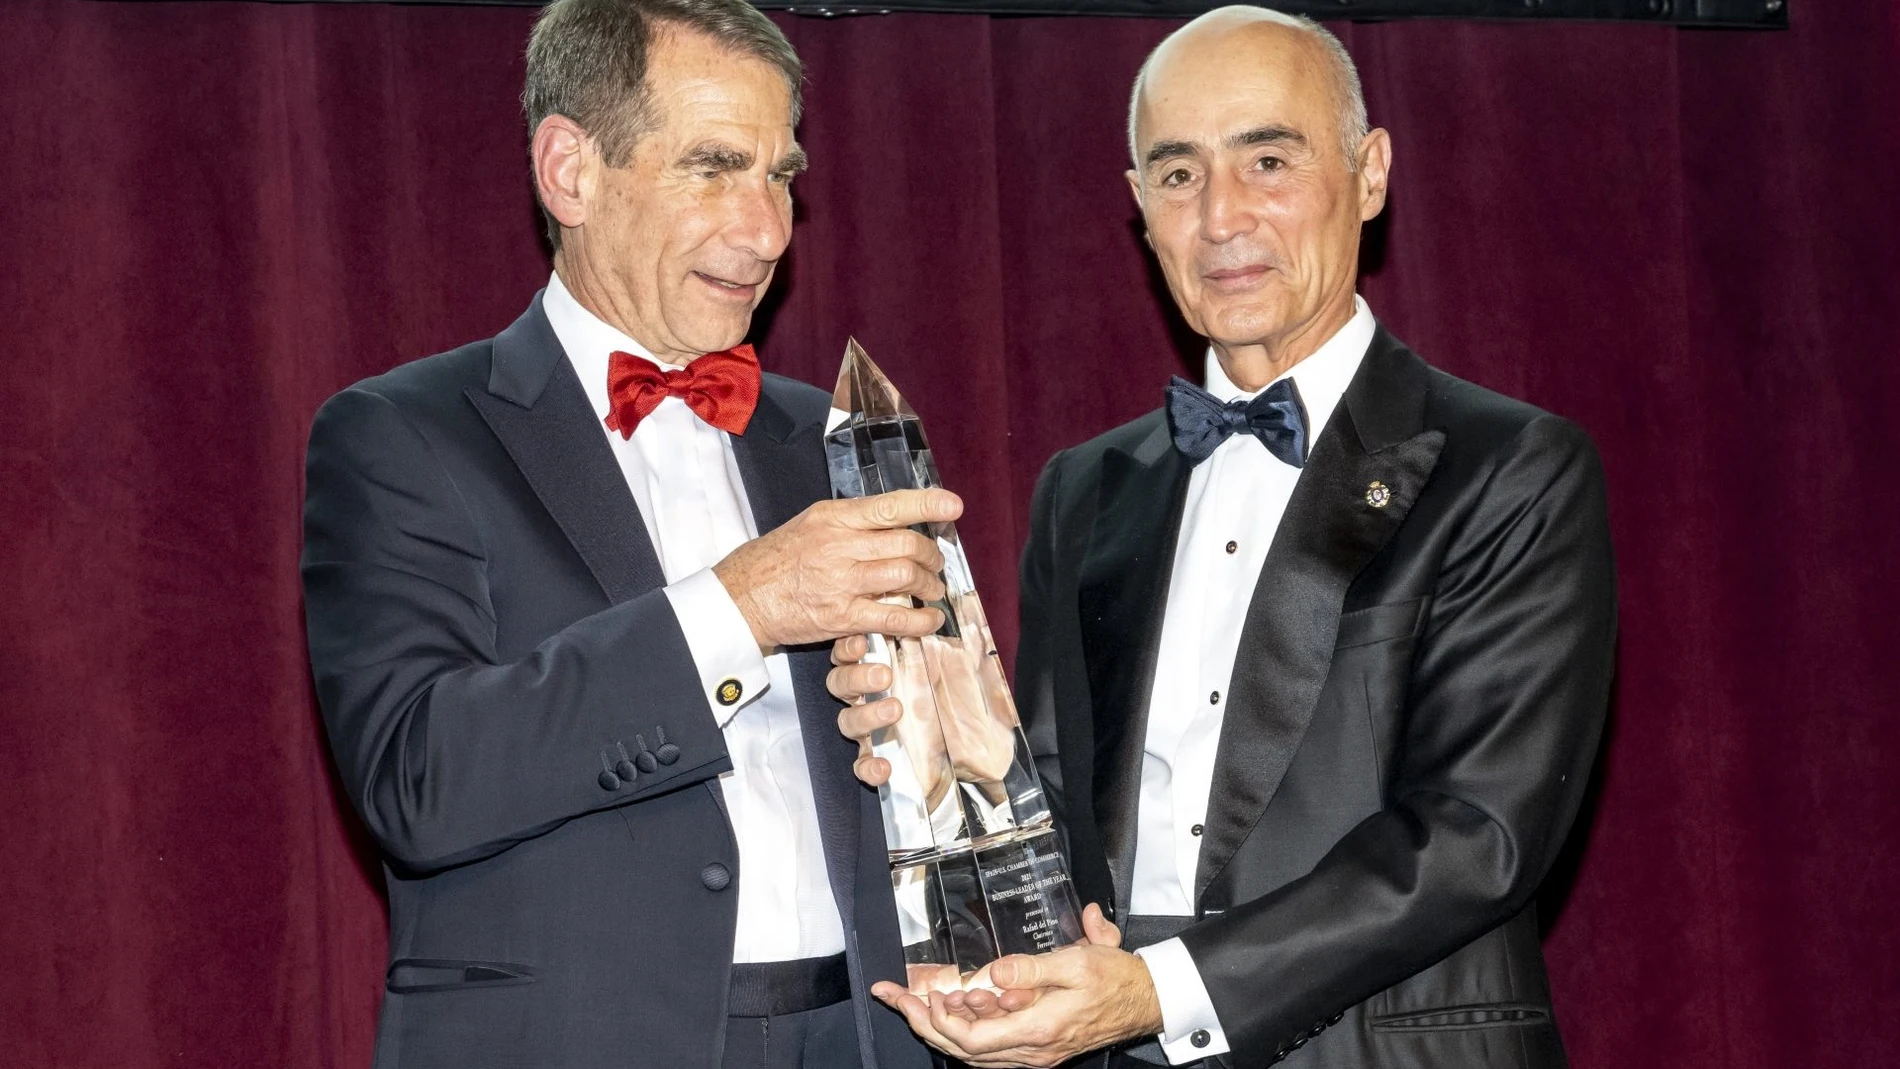 Rafael del Pino, presidente de Ferrovial, recibe el premio a Líder Empresarial del Año de la Cámara de Comercio España-Estados UnidosFERROVIAL14/12/2021